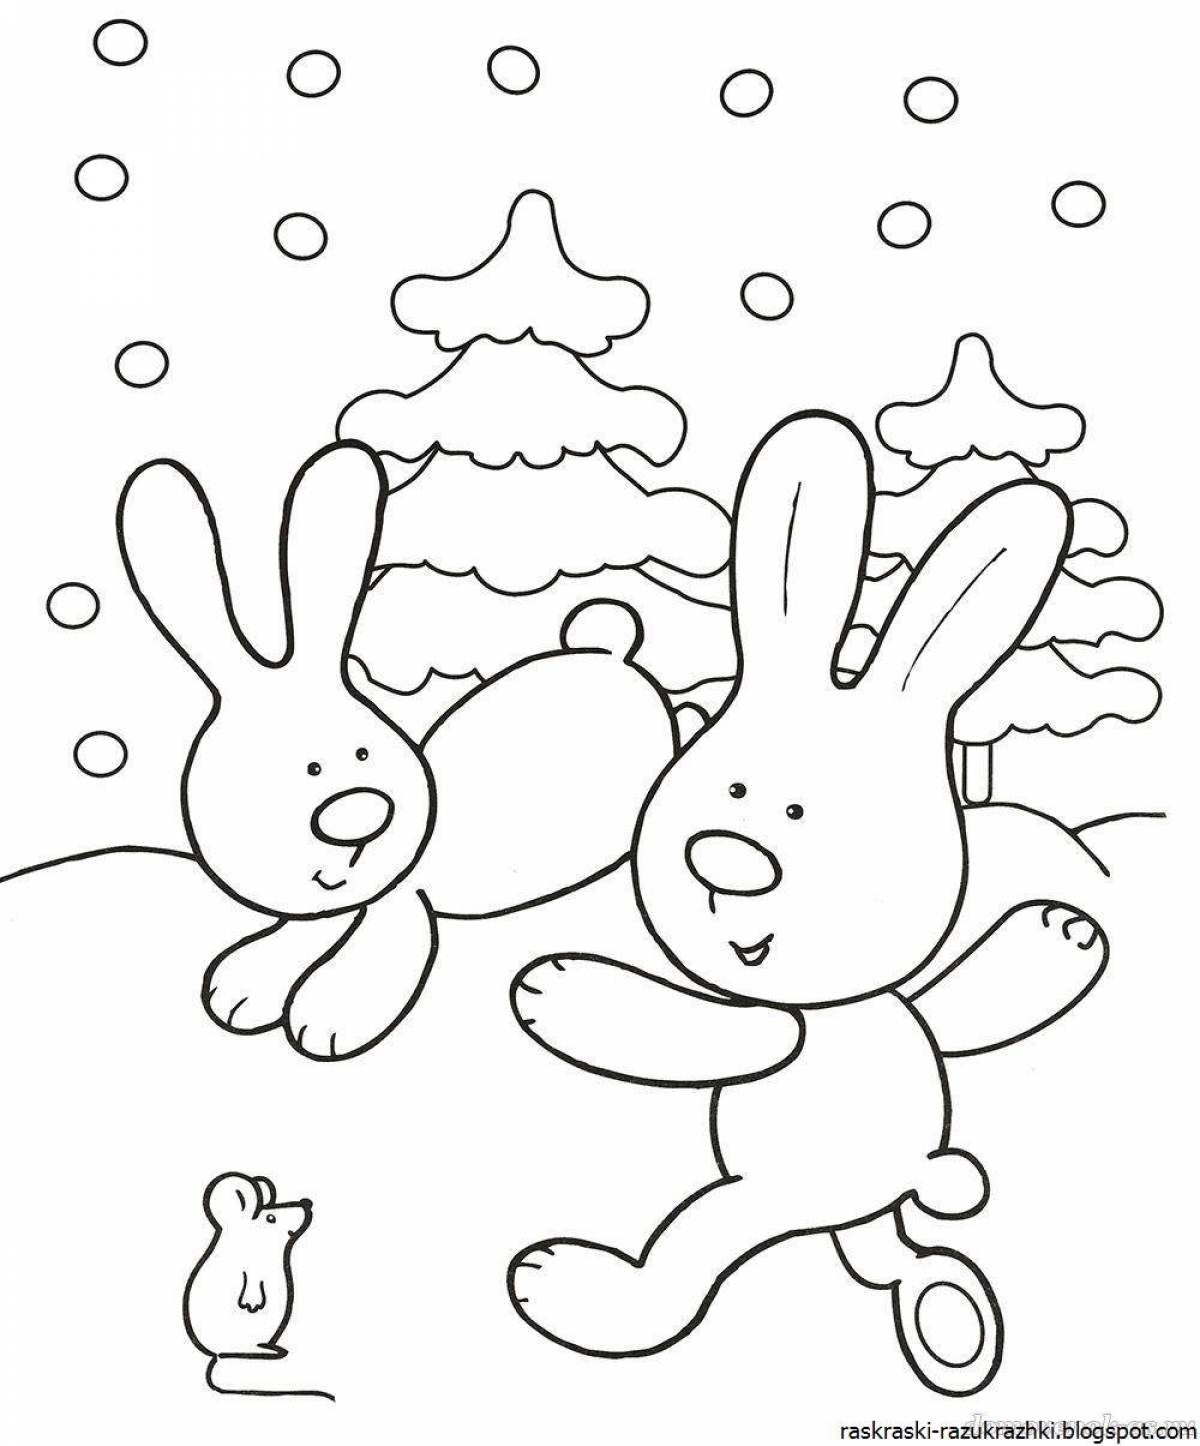 Выдающаяся игра-раскраска с кроликом